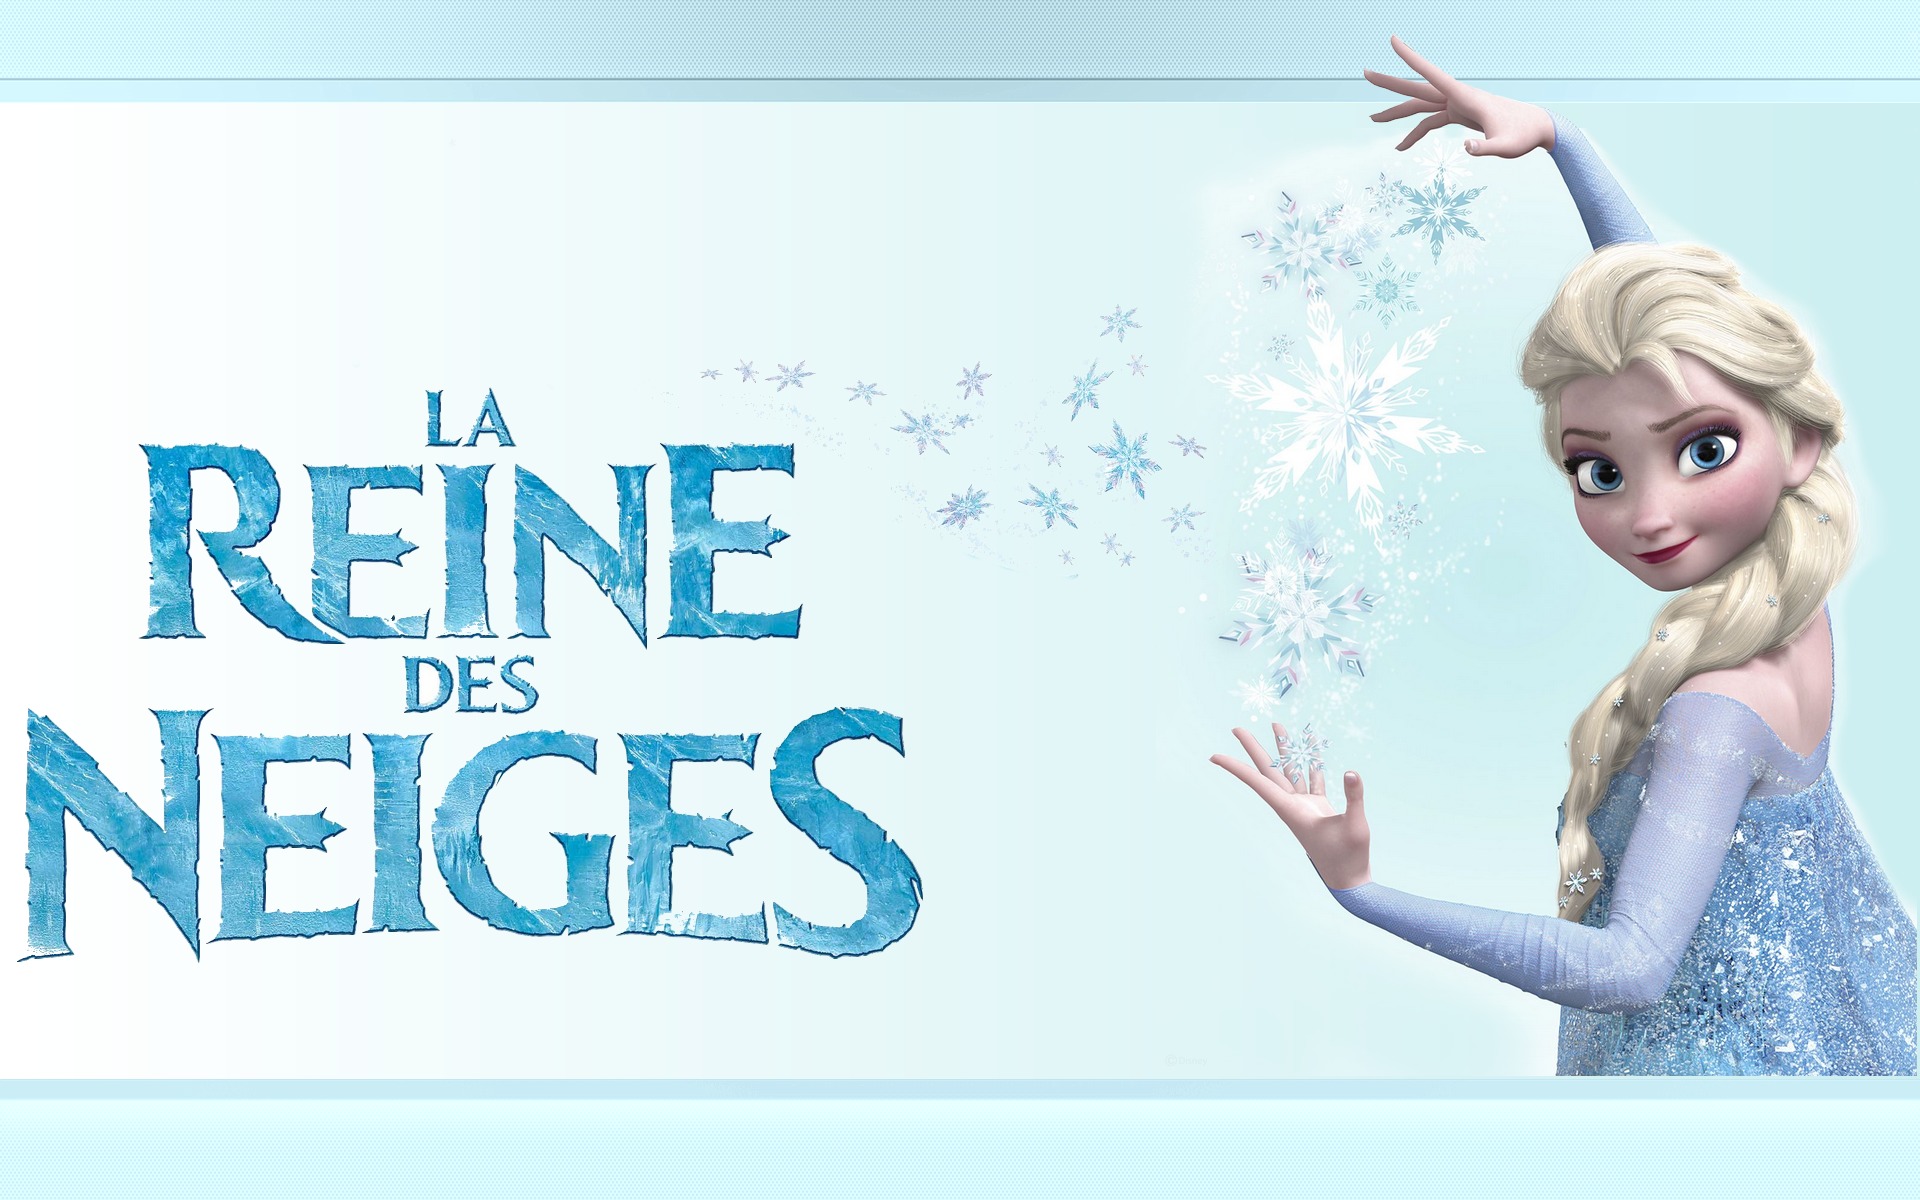 Le pouvoir d'Elsa dans La Reine des neiges Fond d'écran - Image arrière-plan - Wallpaper Favorisxp